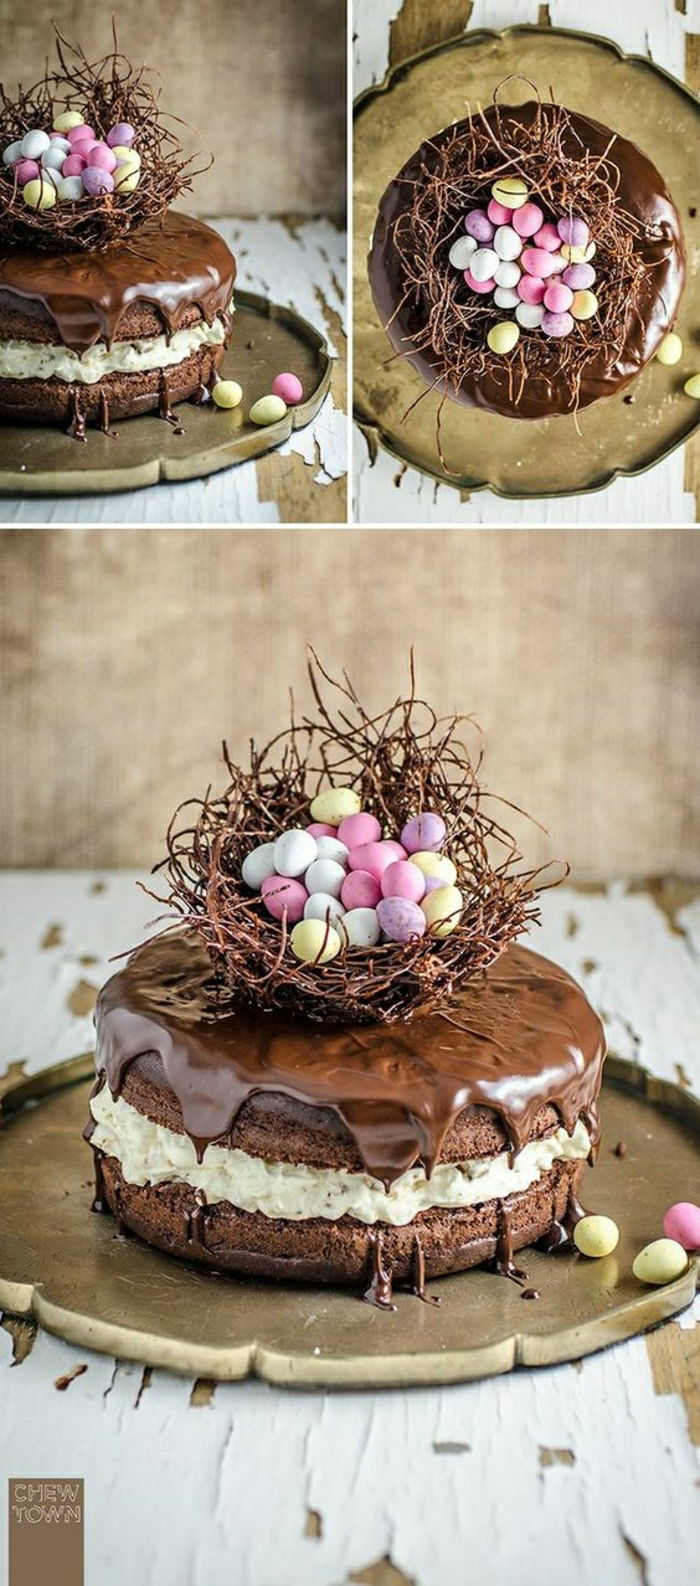 Chokladkaka med påskmotiv Påskkorg med små färgglada ägg